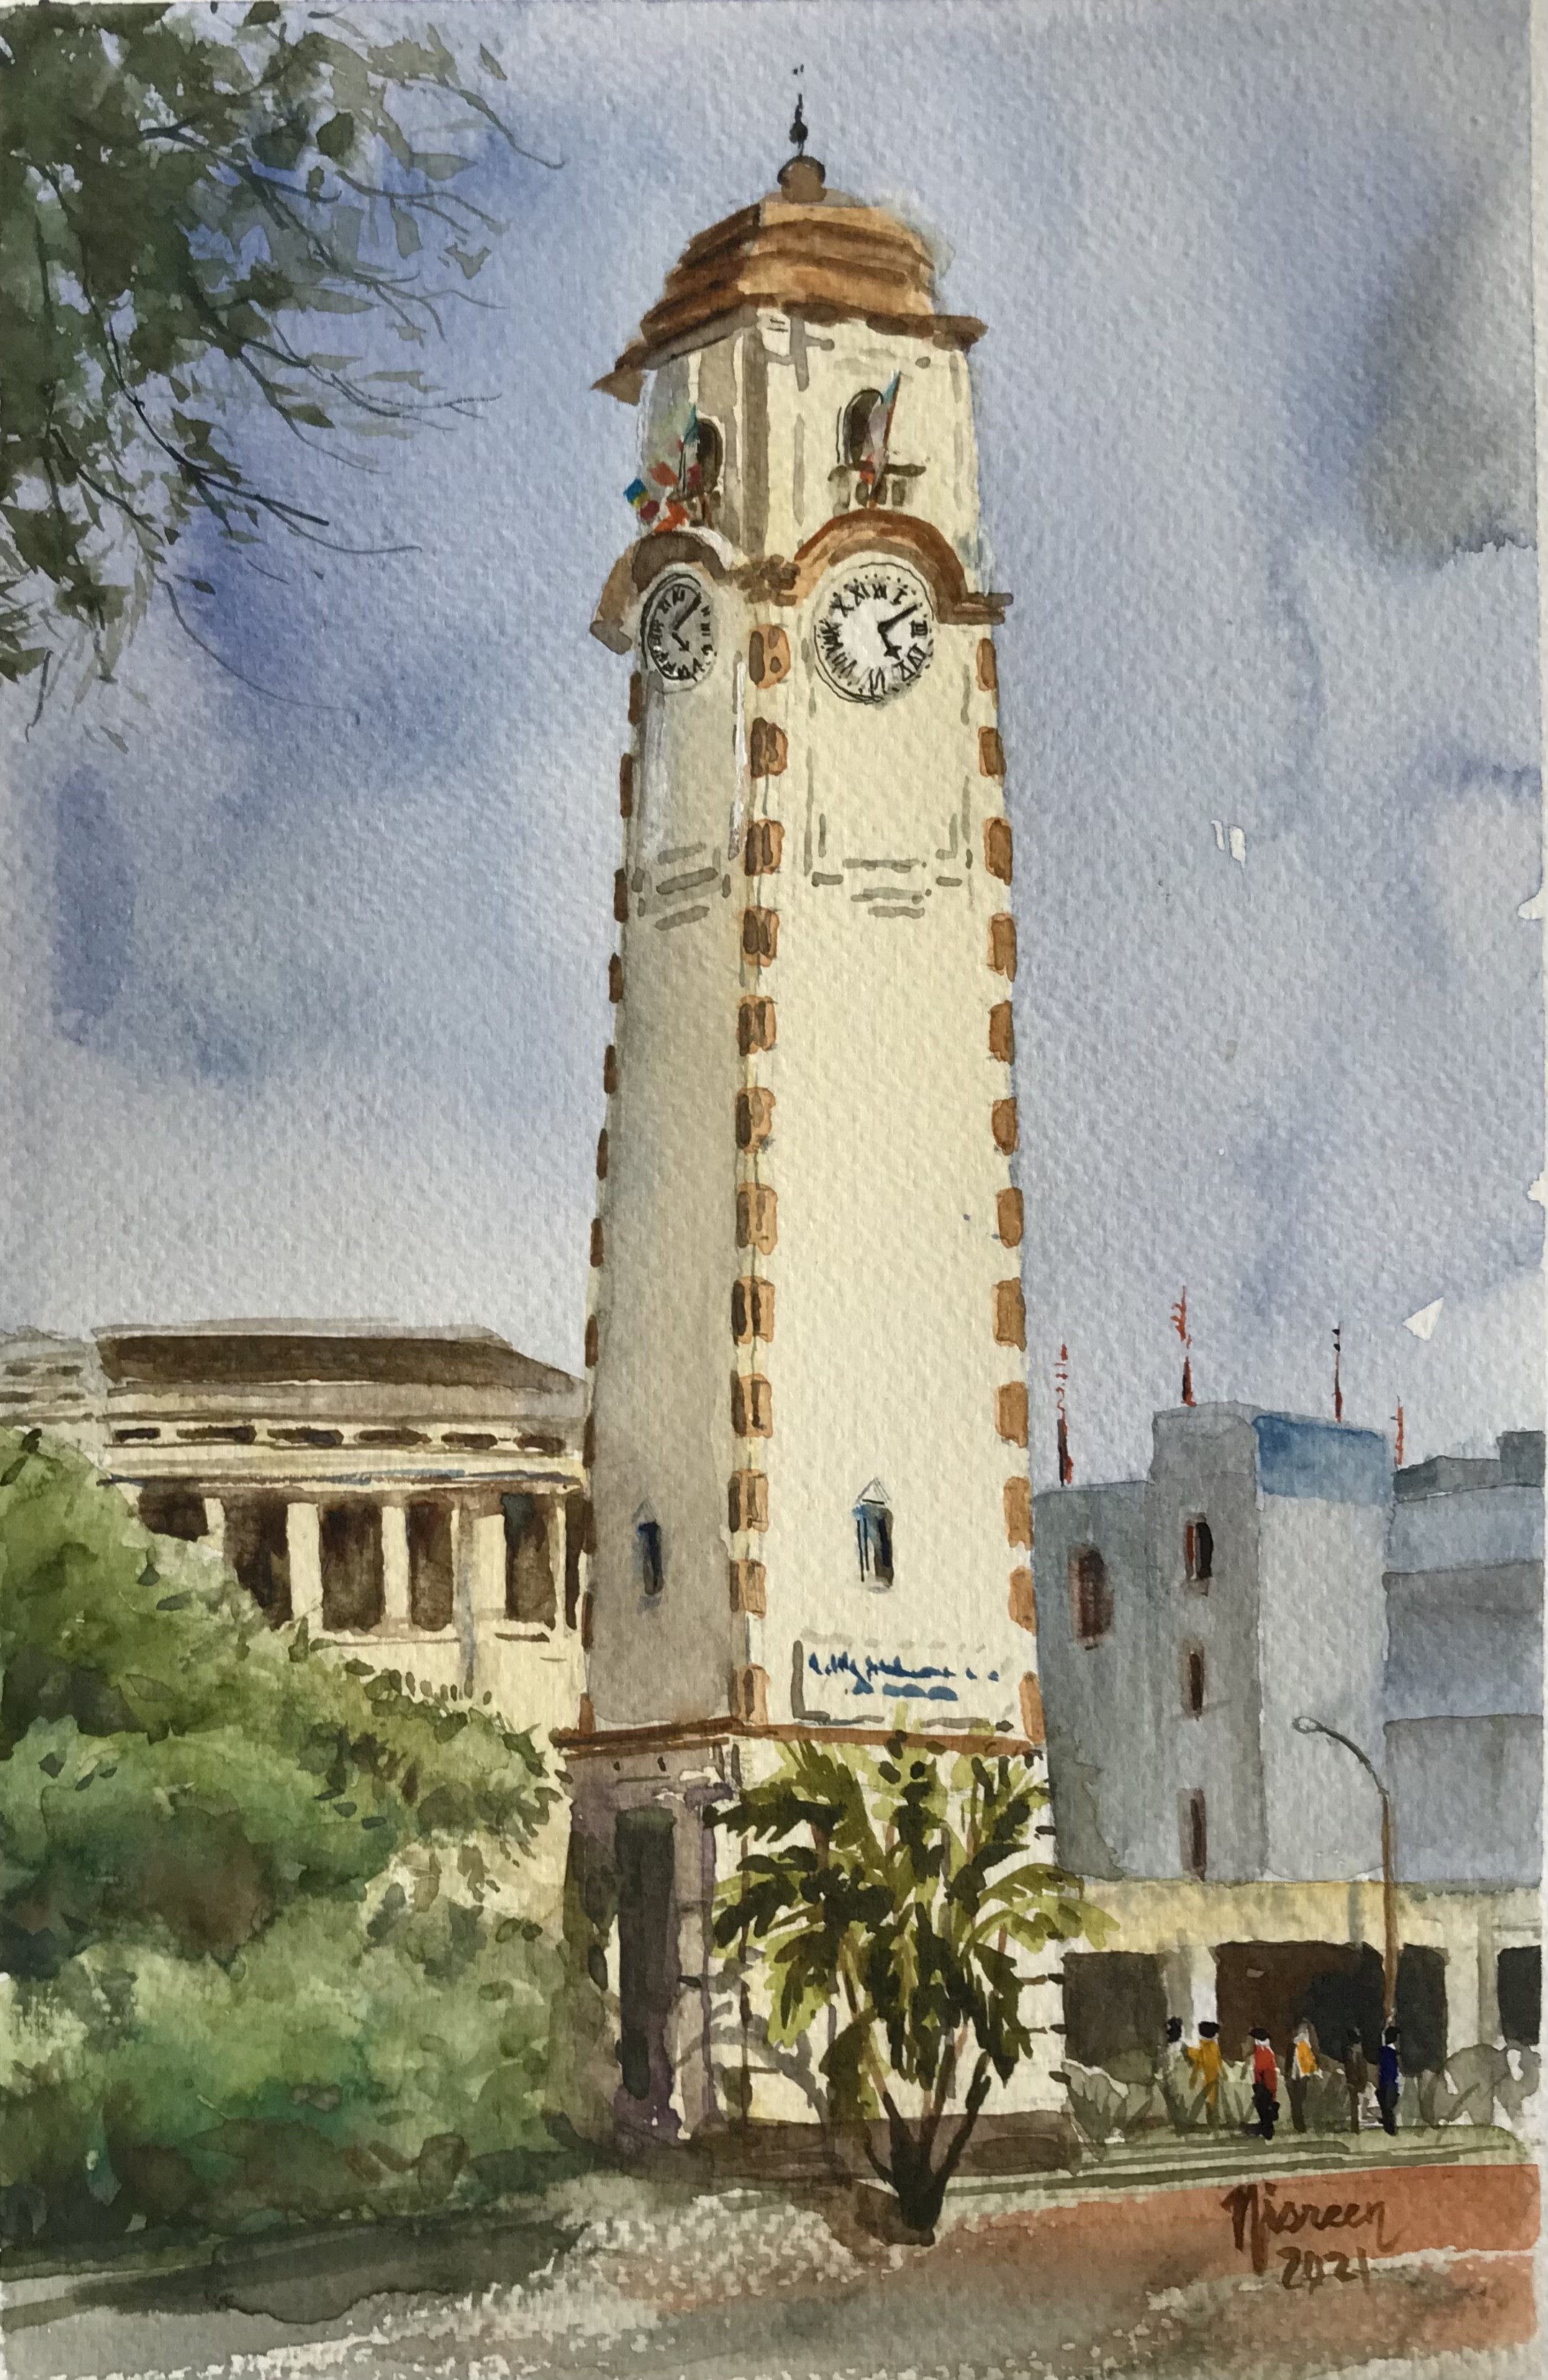 Khan clock tower Pettah by Nisreen Amiruddeen